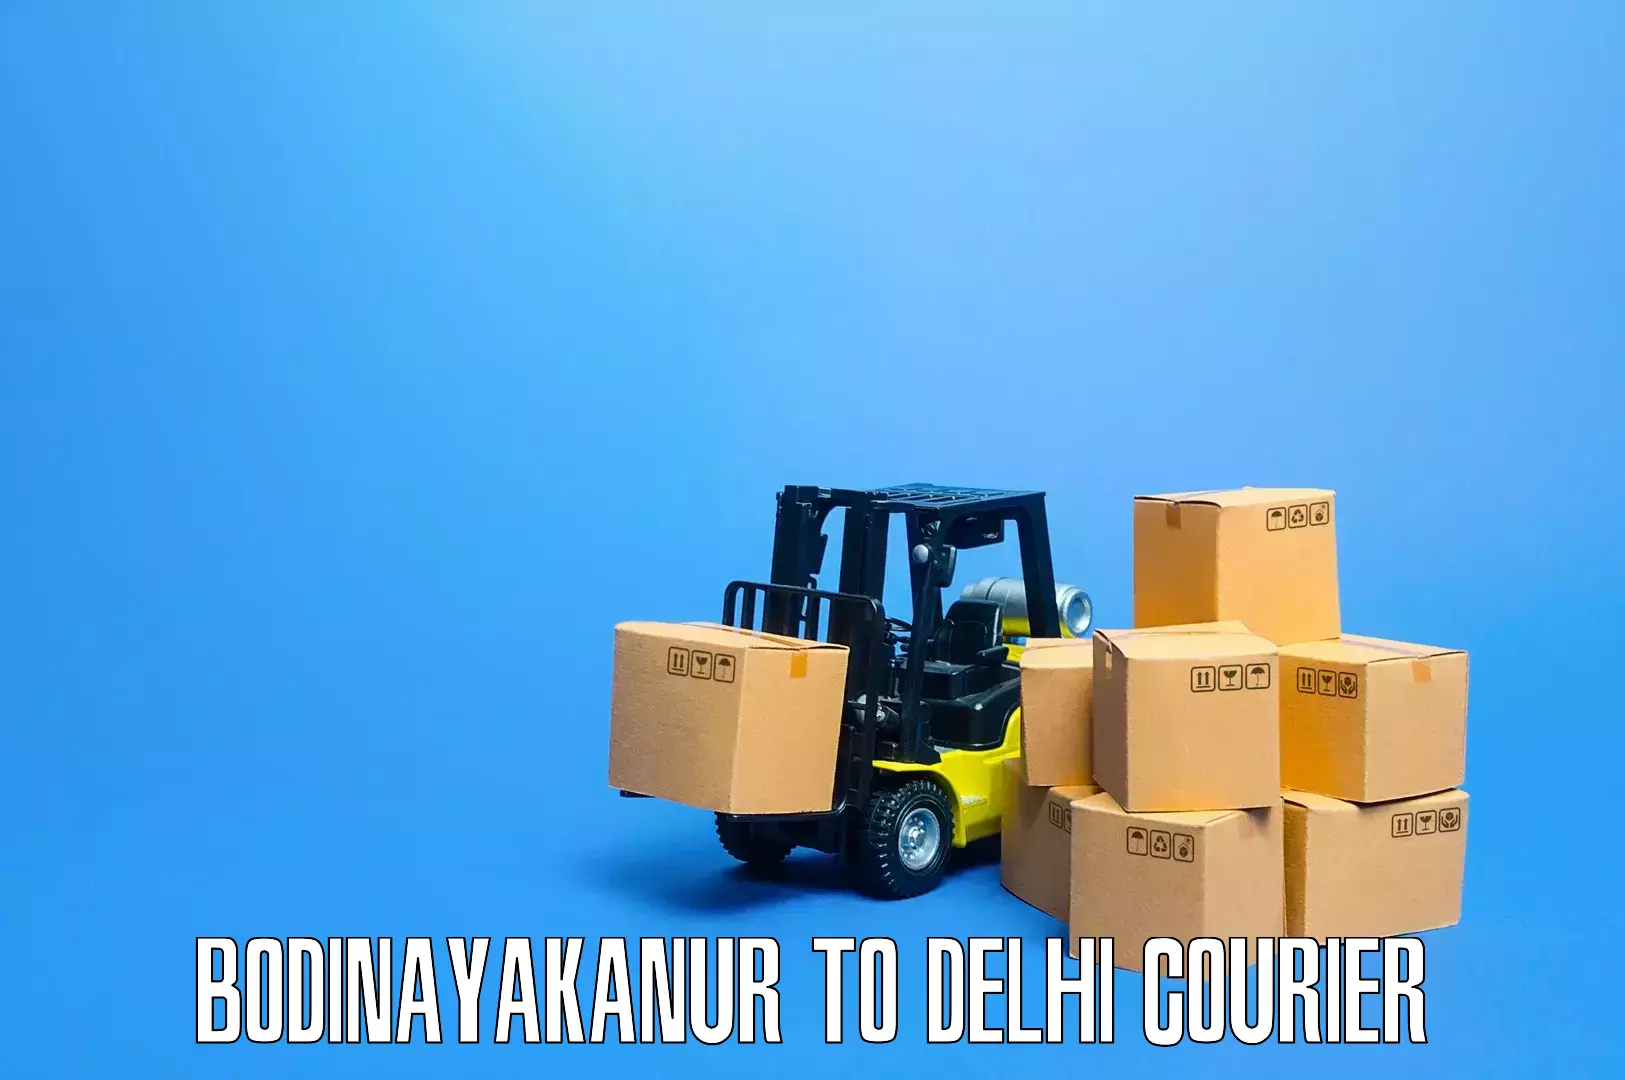 Household moving and storage Bodinayakanur to Jawaharlal Nehru University New Delhi